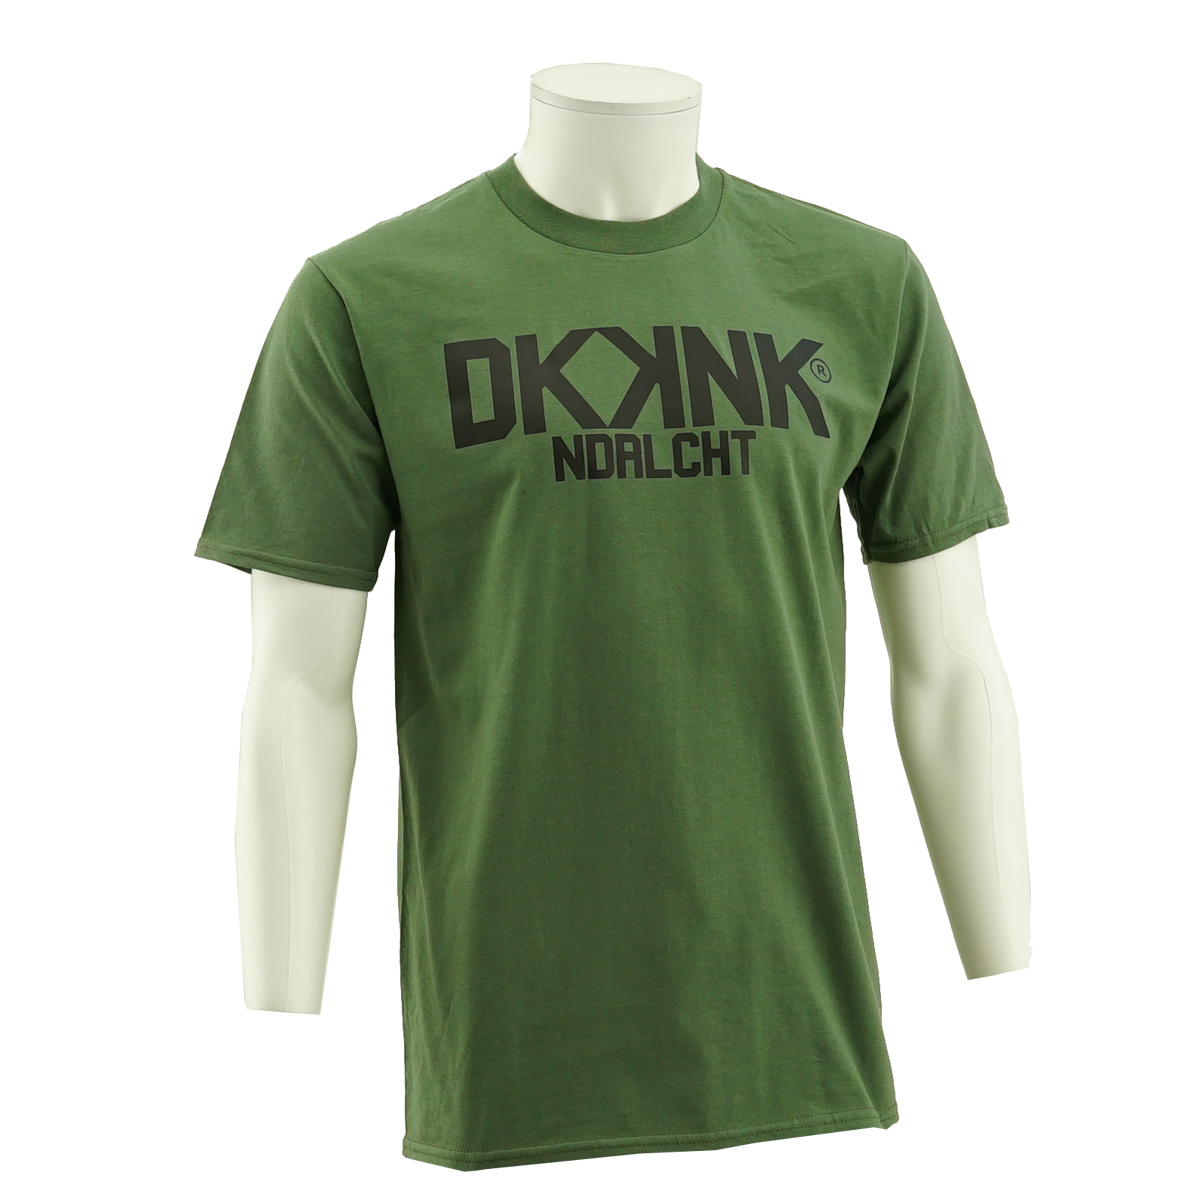 RSCA T-Shirt Mauff DKKNK